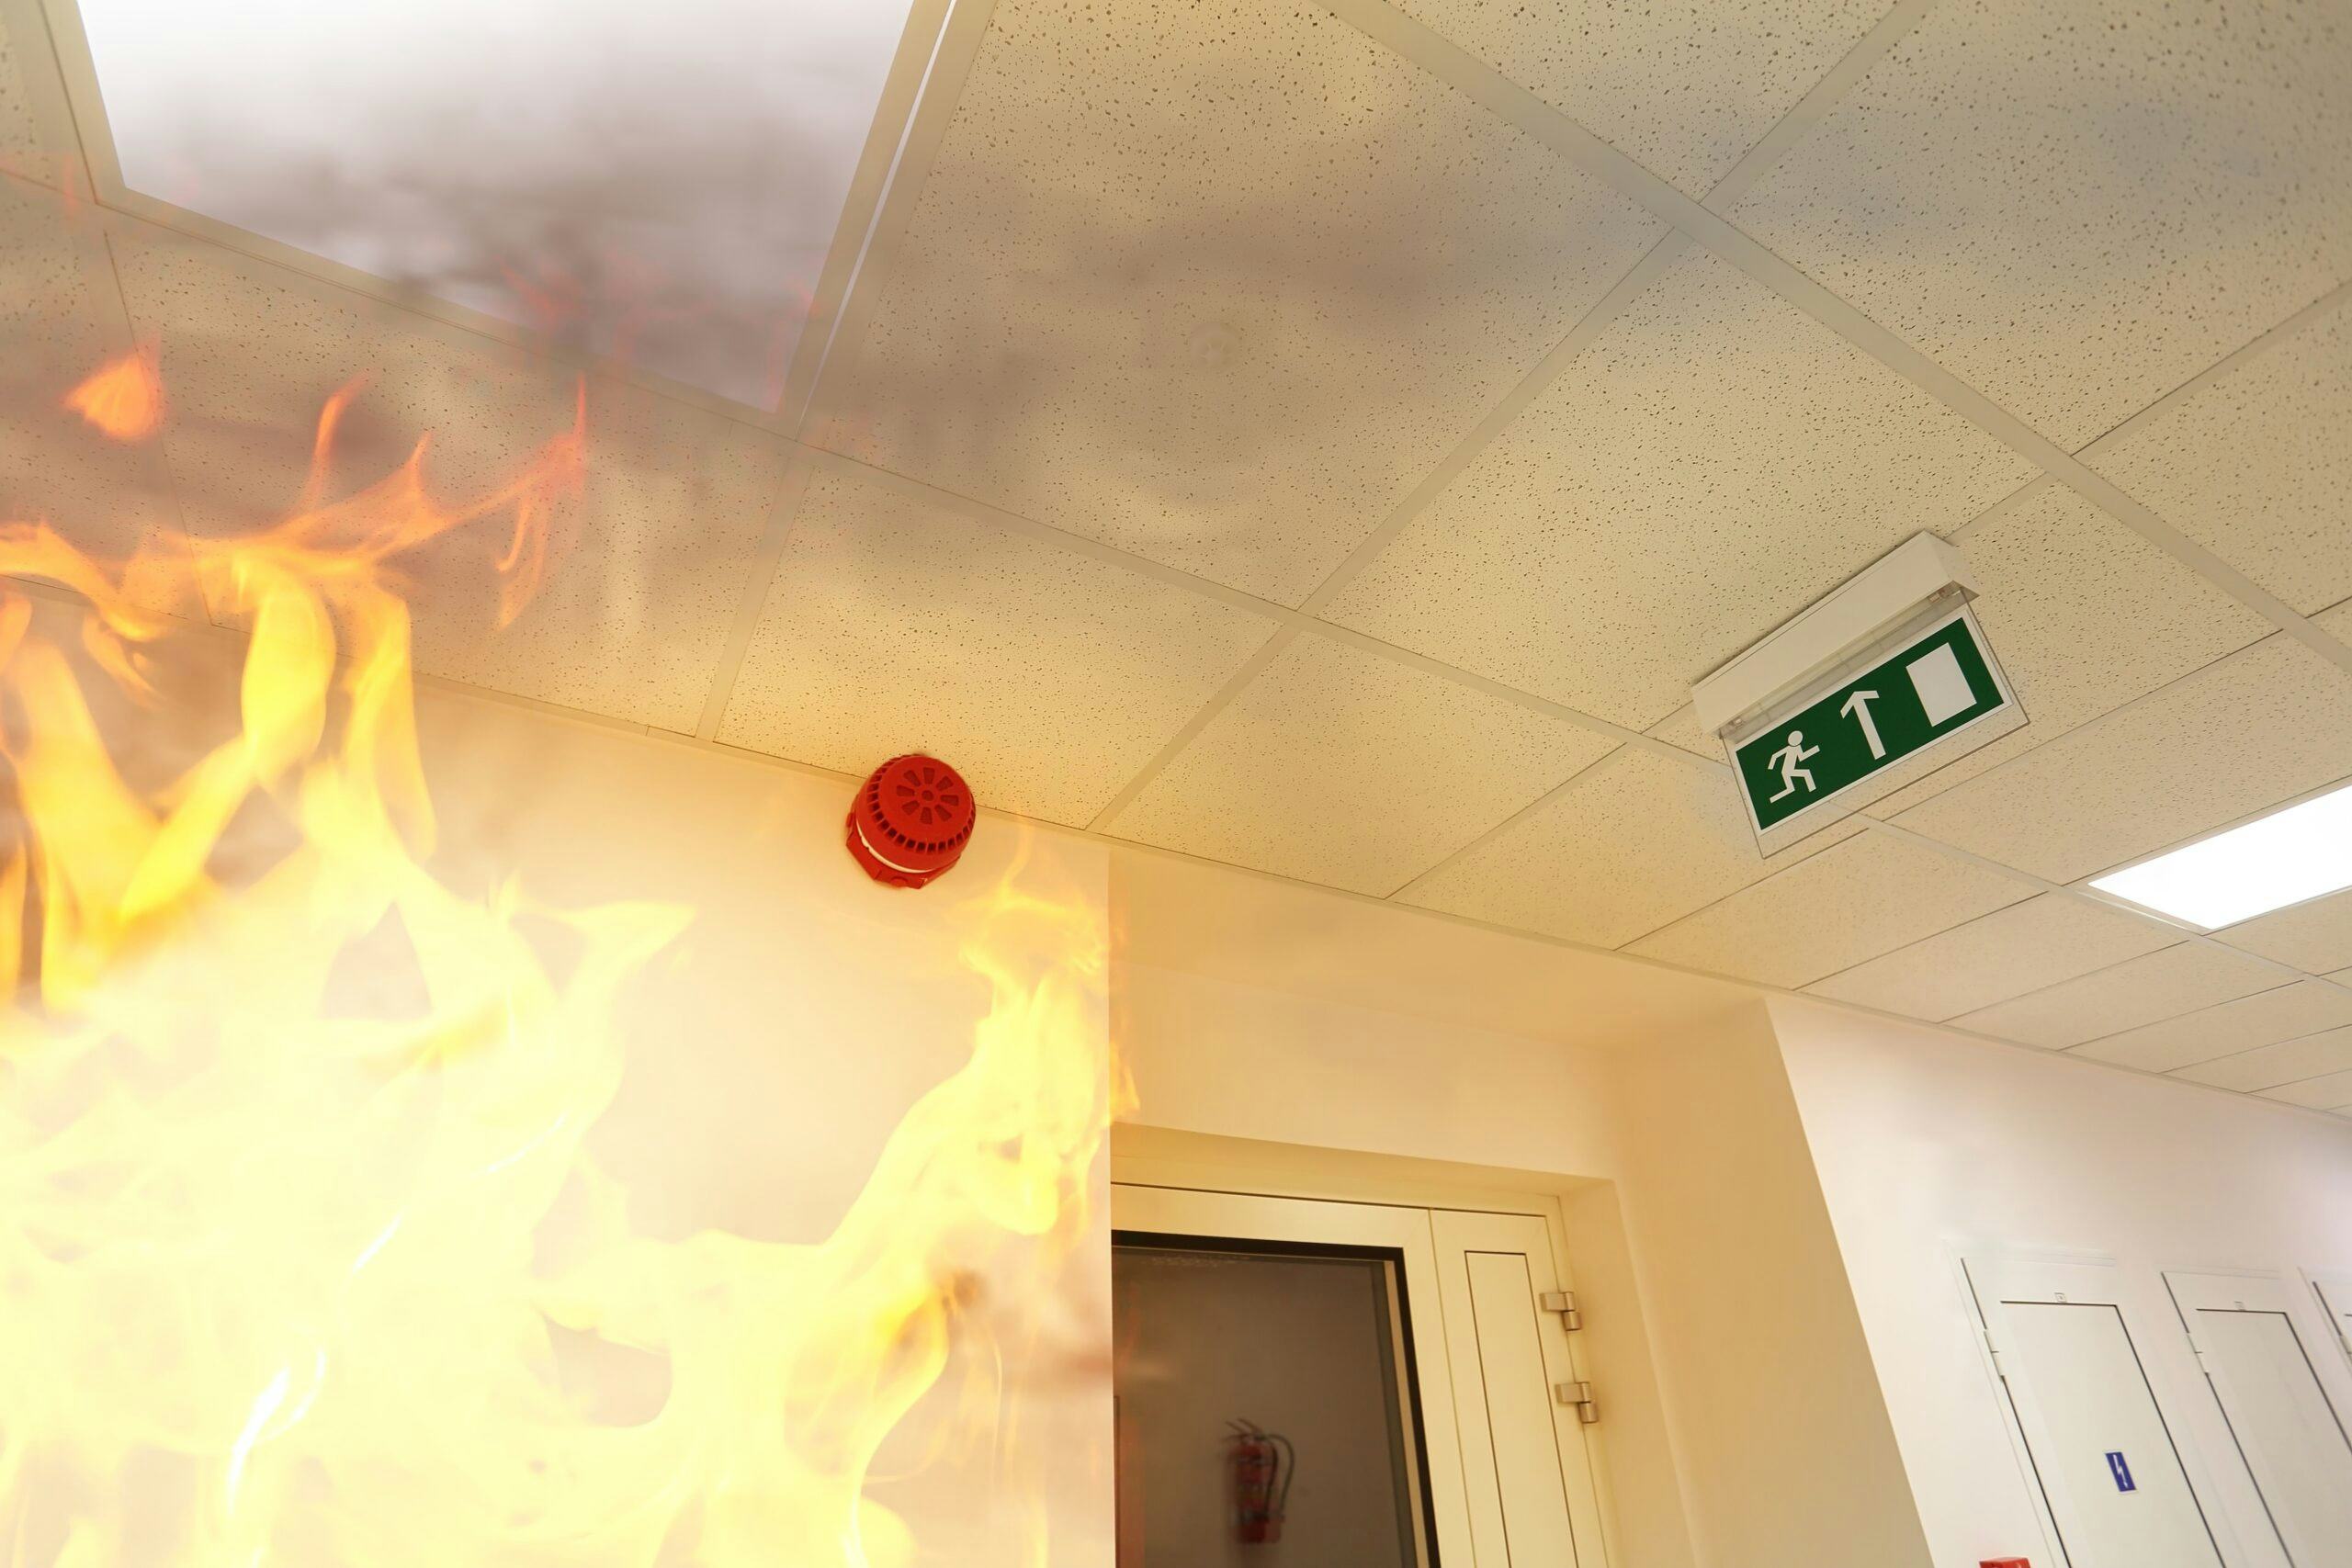 Is in een kantoorgebouw een brandmeldinstallatie vereist?